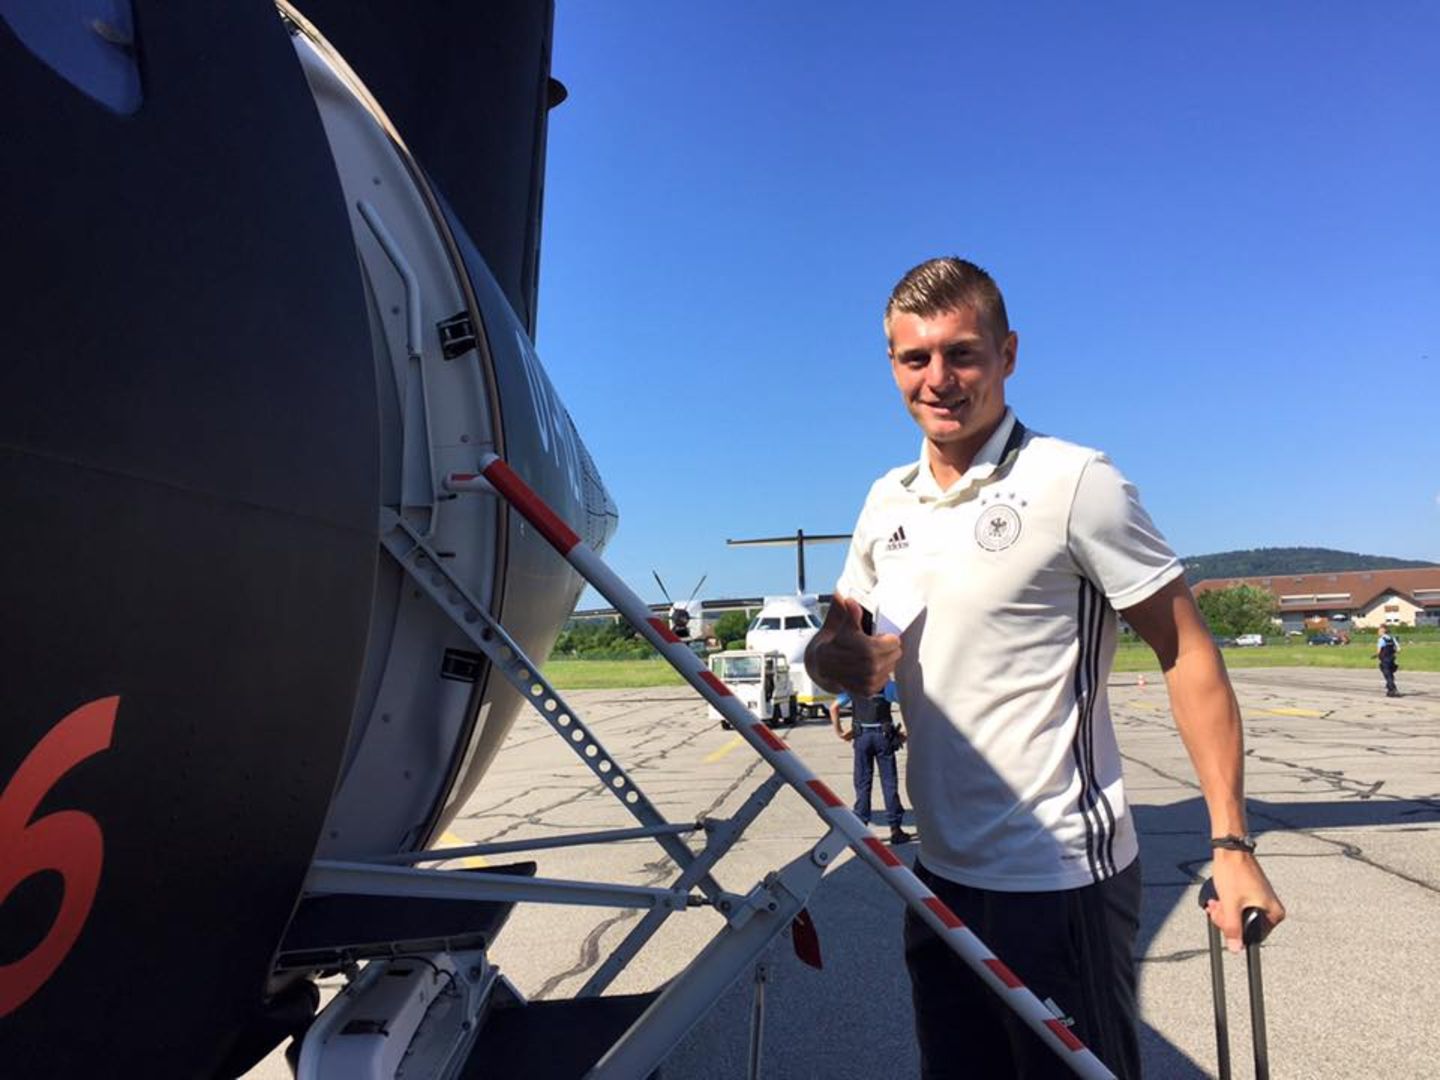 Auf nach Bordeaux: Toni Kroos wirkt sehr zuversichtlich. Wir drücken die Daumen für die Mannschaft.